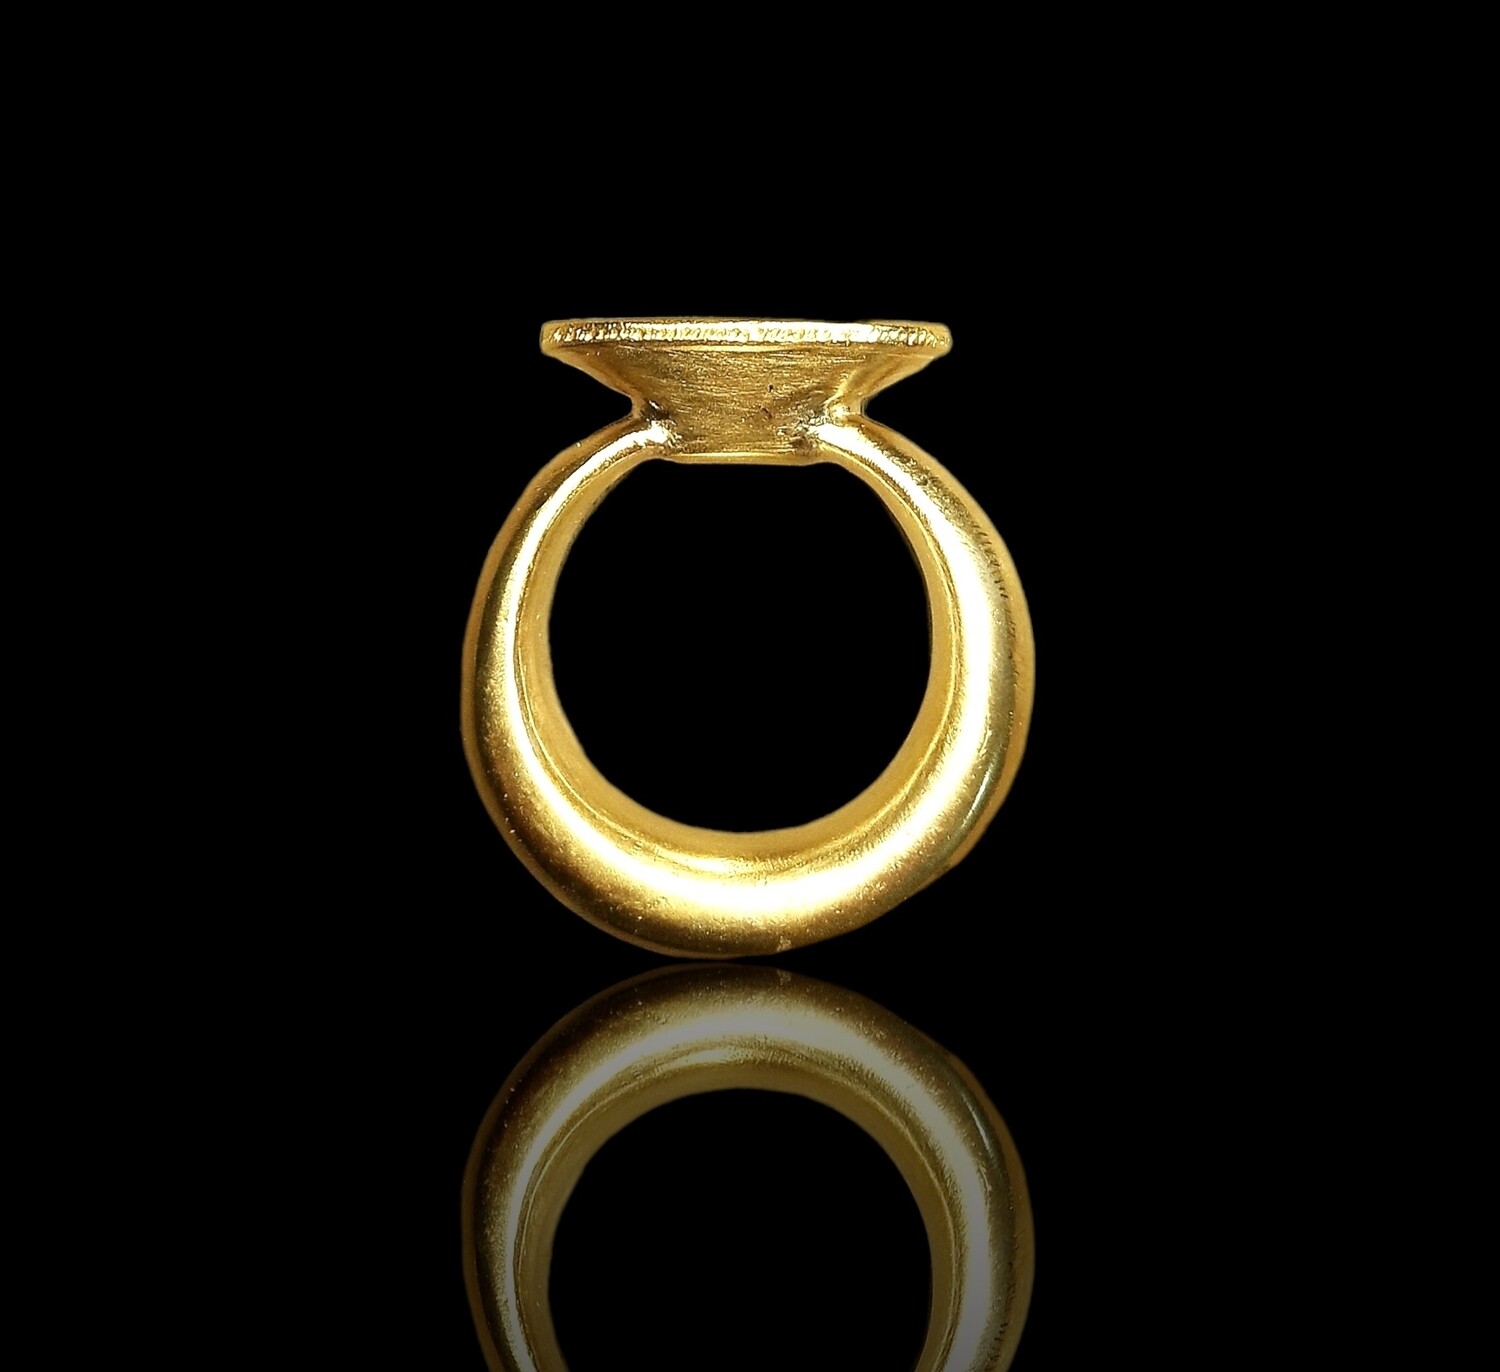 Anello sigillo etrusco, replica di originale, fusione a cera persa.